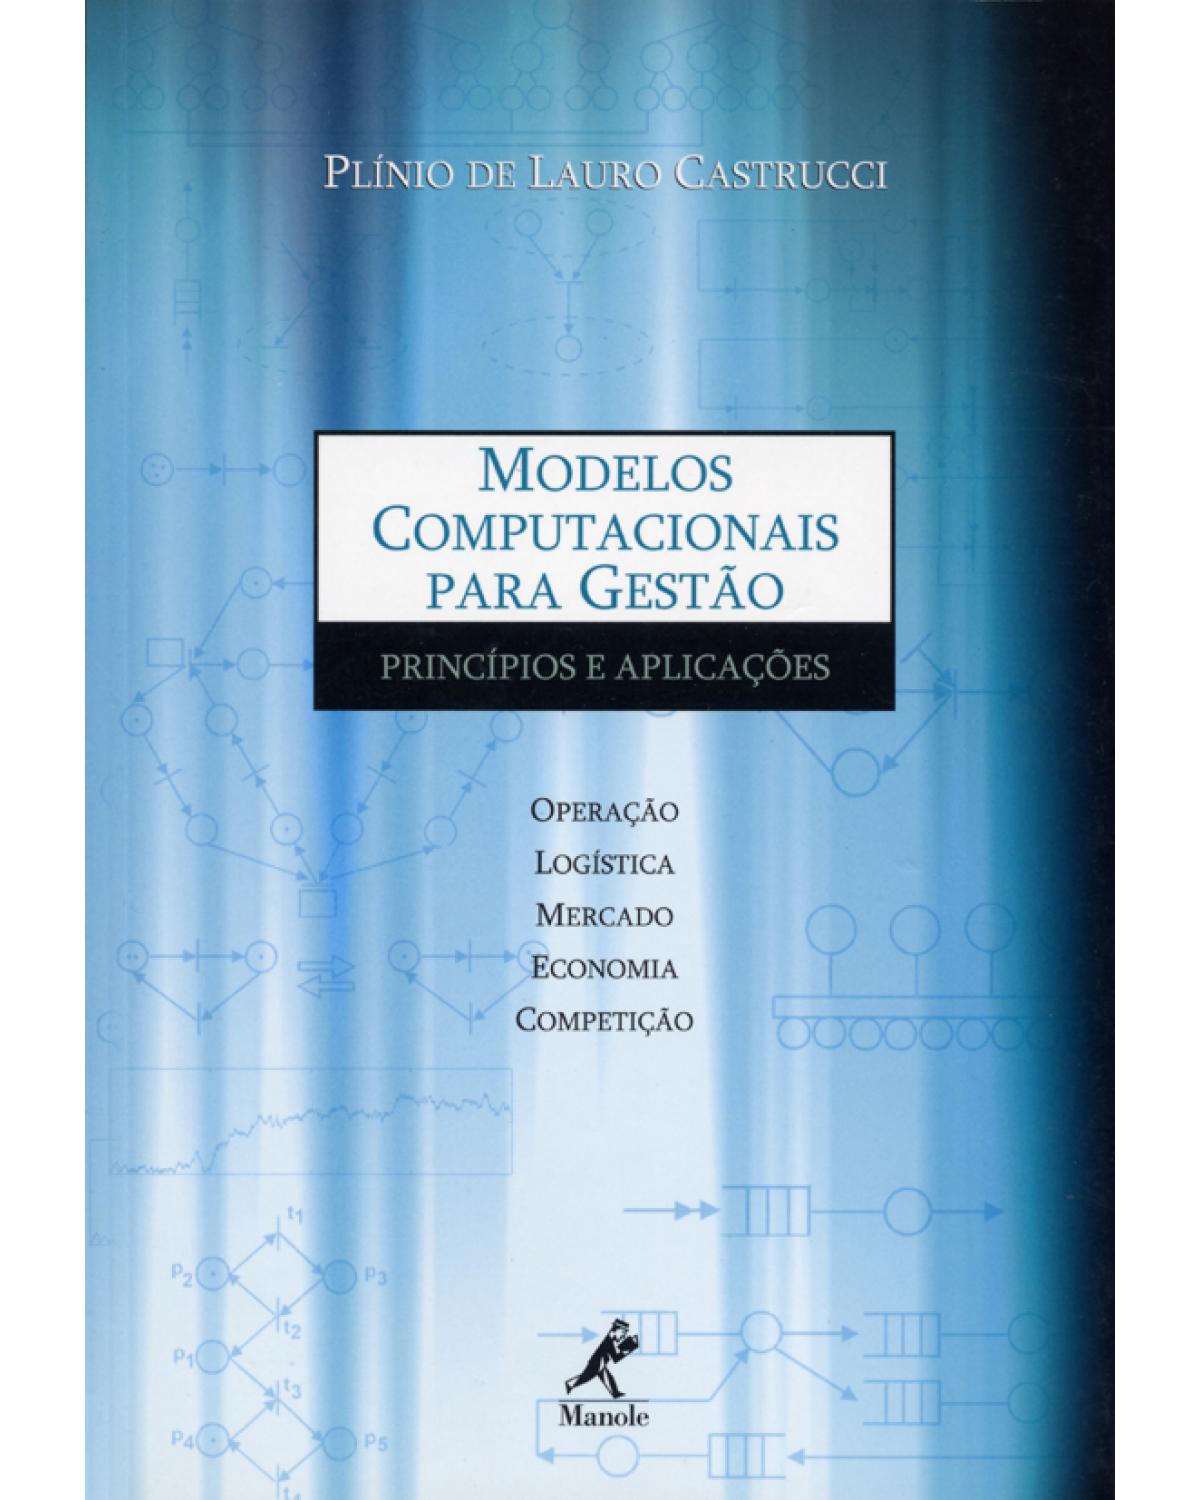 Modelos computacionais para gestão - princípios e aplicações - 1ª Edição | 2004